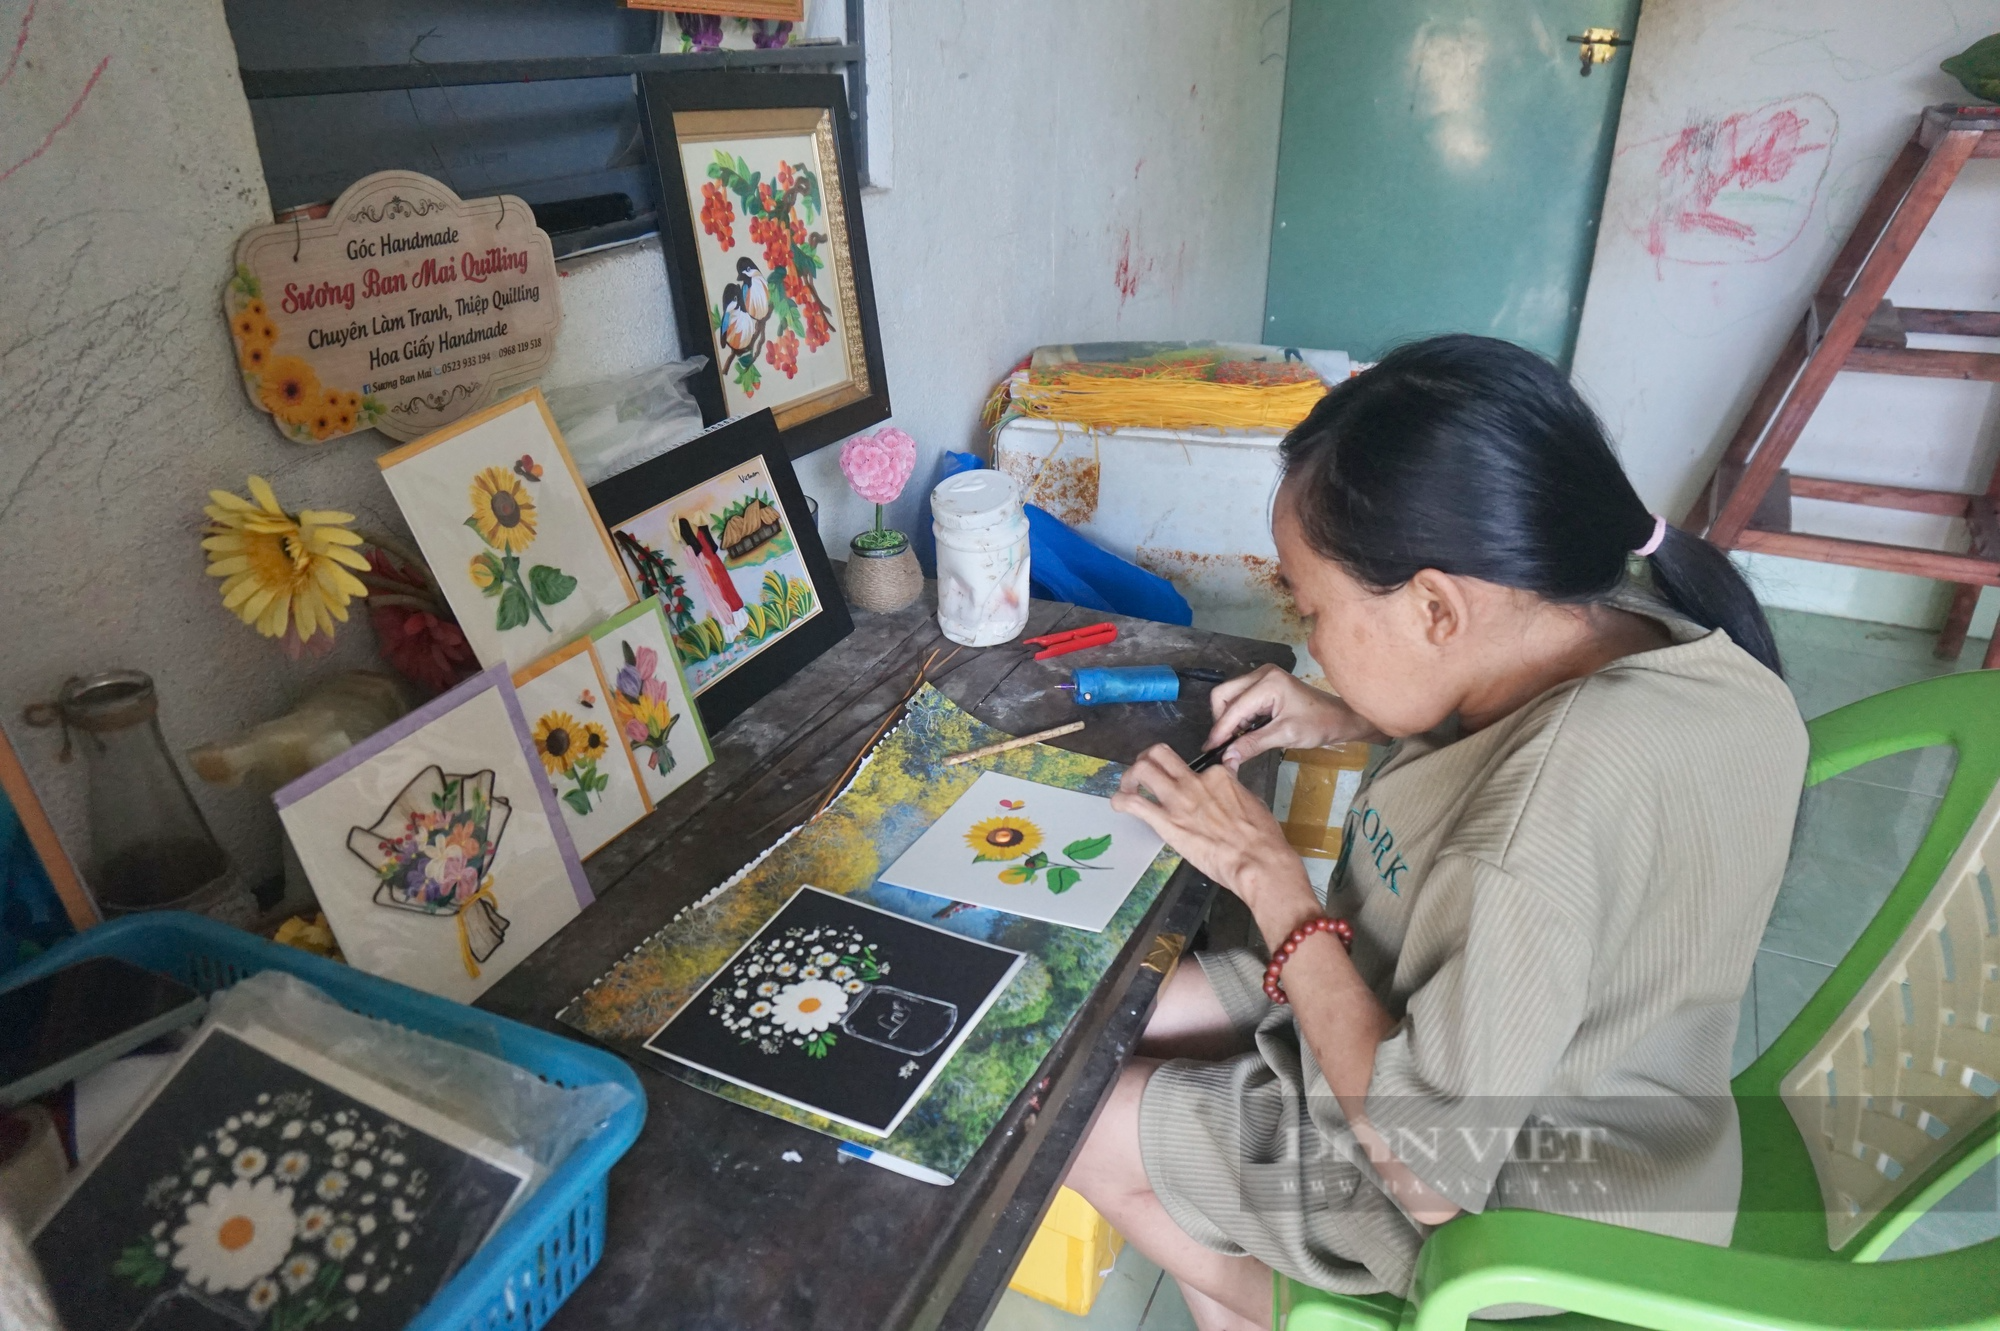 Đà Nẵng: Người mẹ đơn thân khuyết tật khởi nghiệp với đam mê làm tranh giấy xoắn - Ảnh 2.